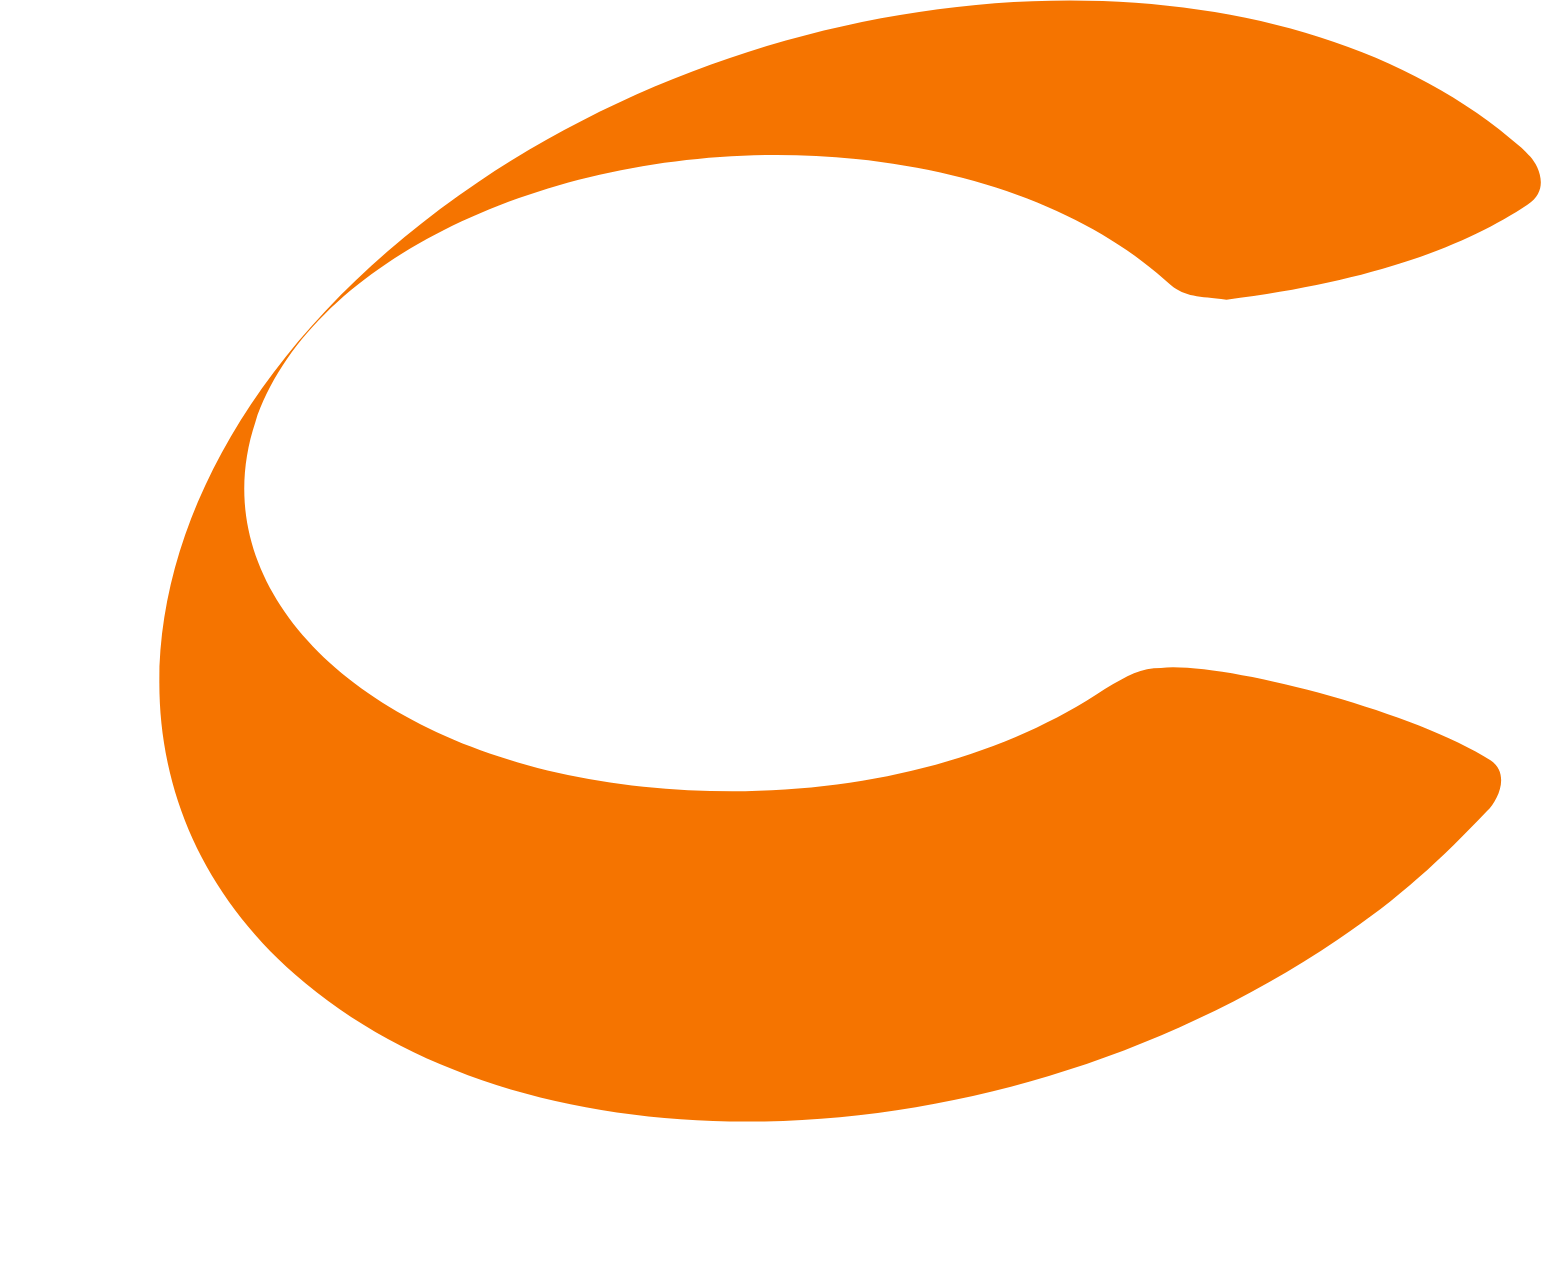 Conformis logo for dark backgrounds (transparent PNG)